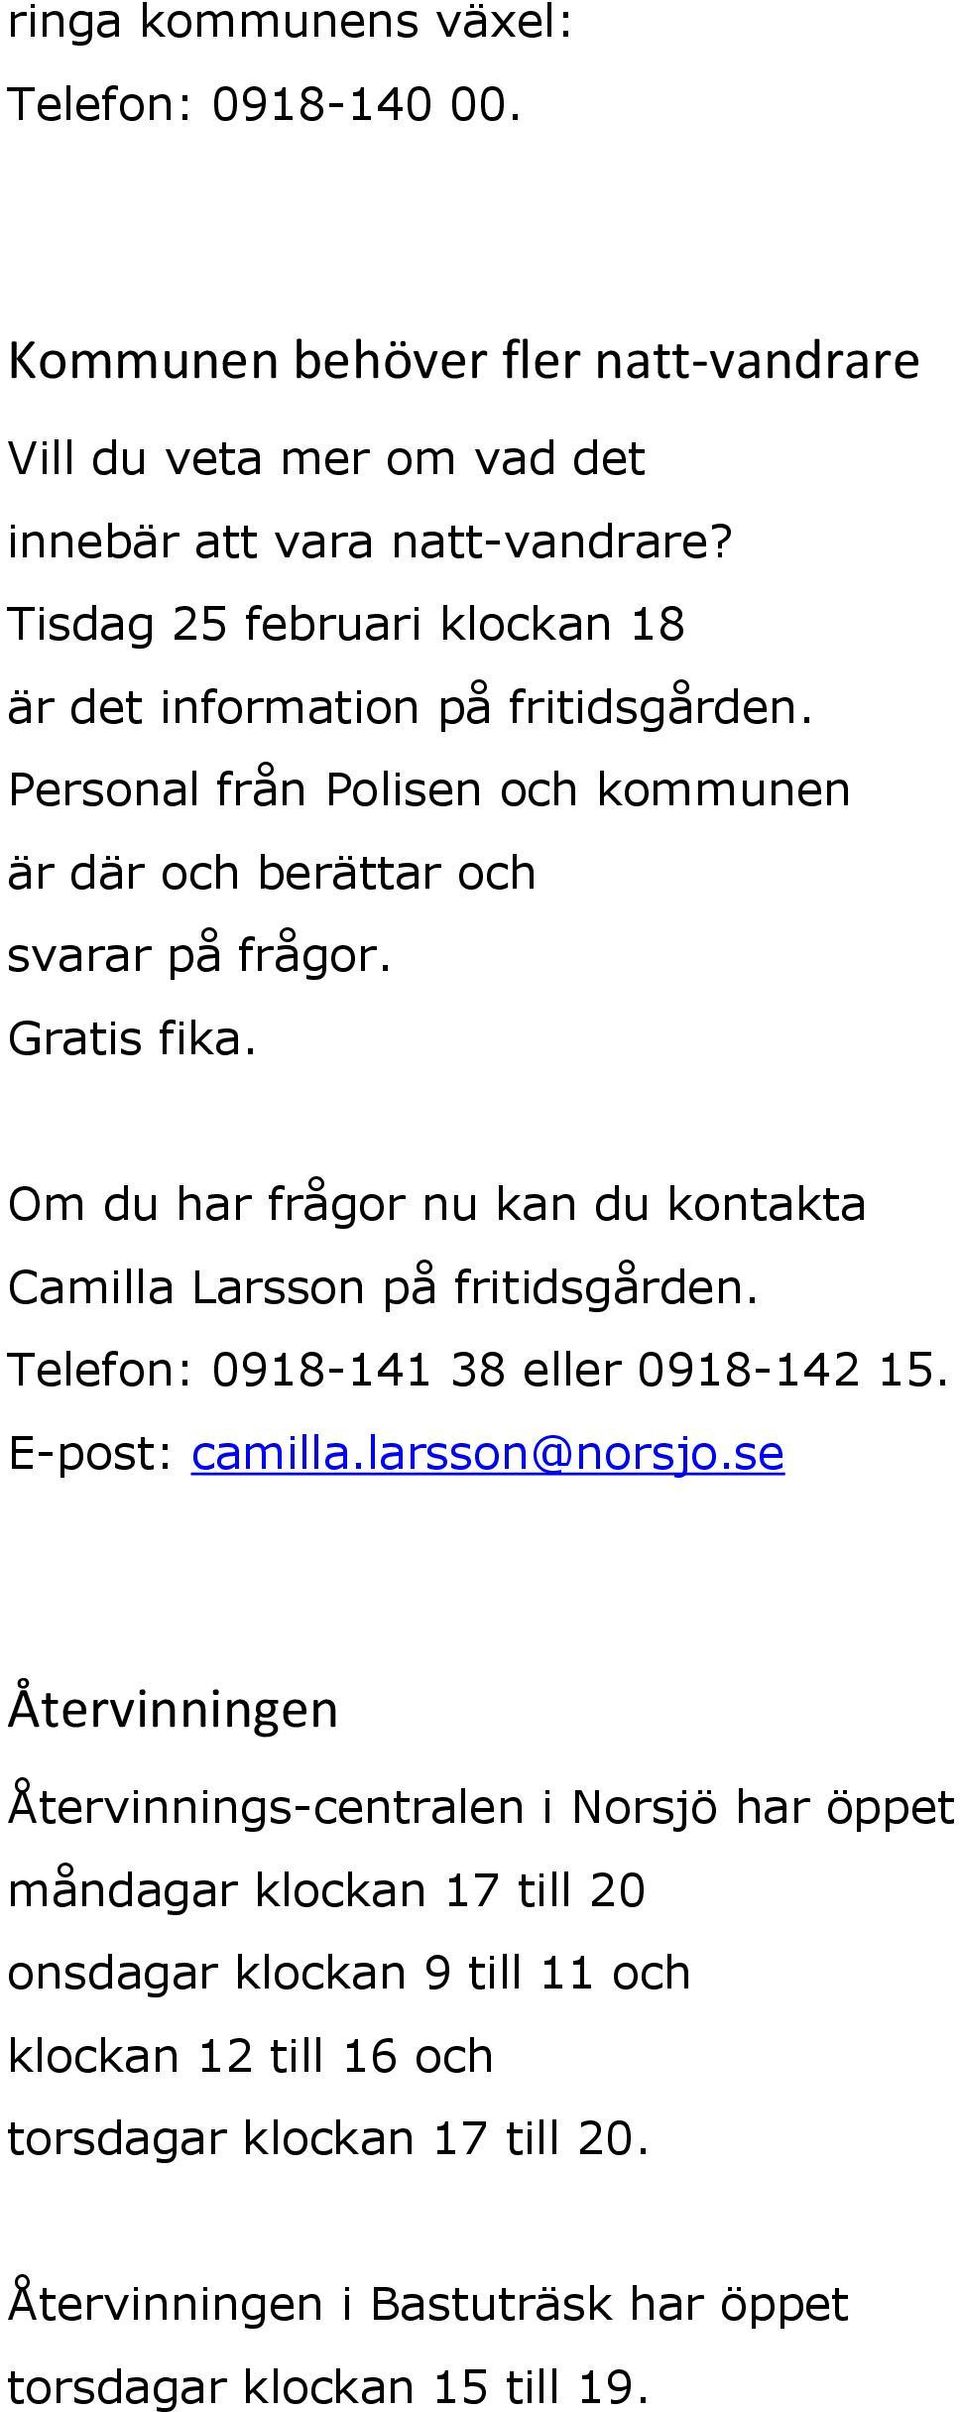 Om du har frågor nu kan du kontakta Camilla Larsson på fritidsgården. Telefon: 0918-141 38 eller 0918-142 15. E-post: camilla.larsson@norsjo.